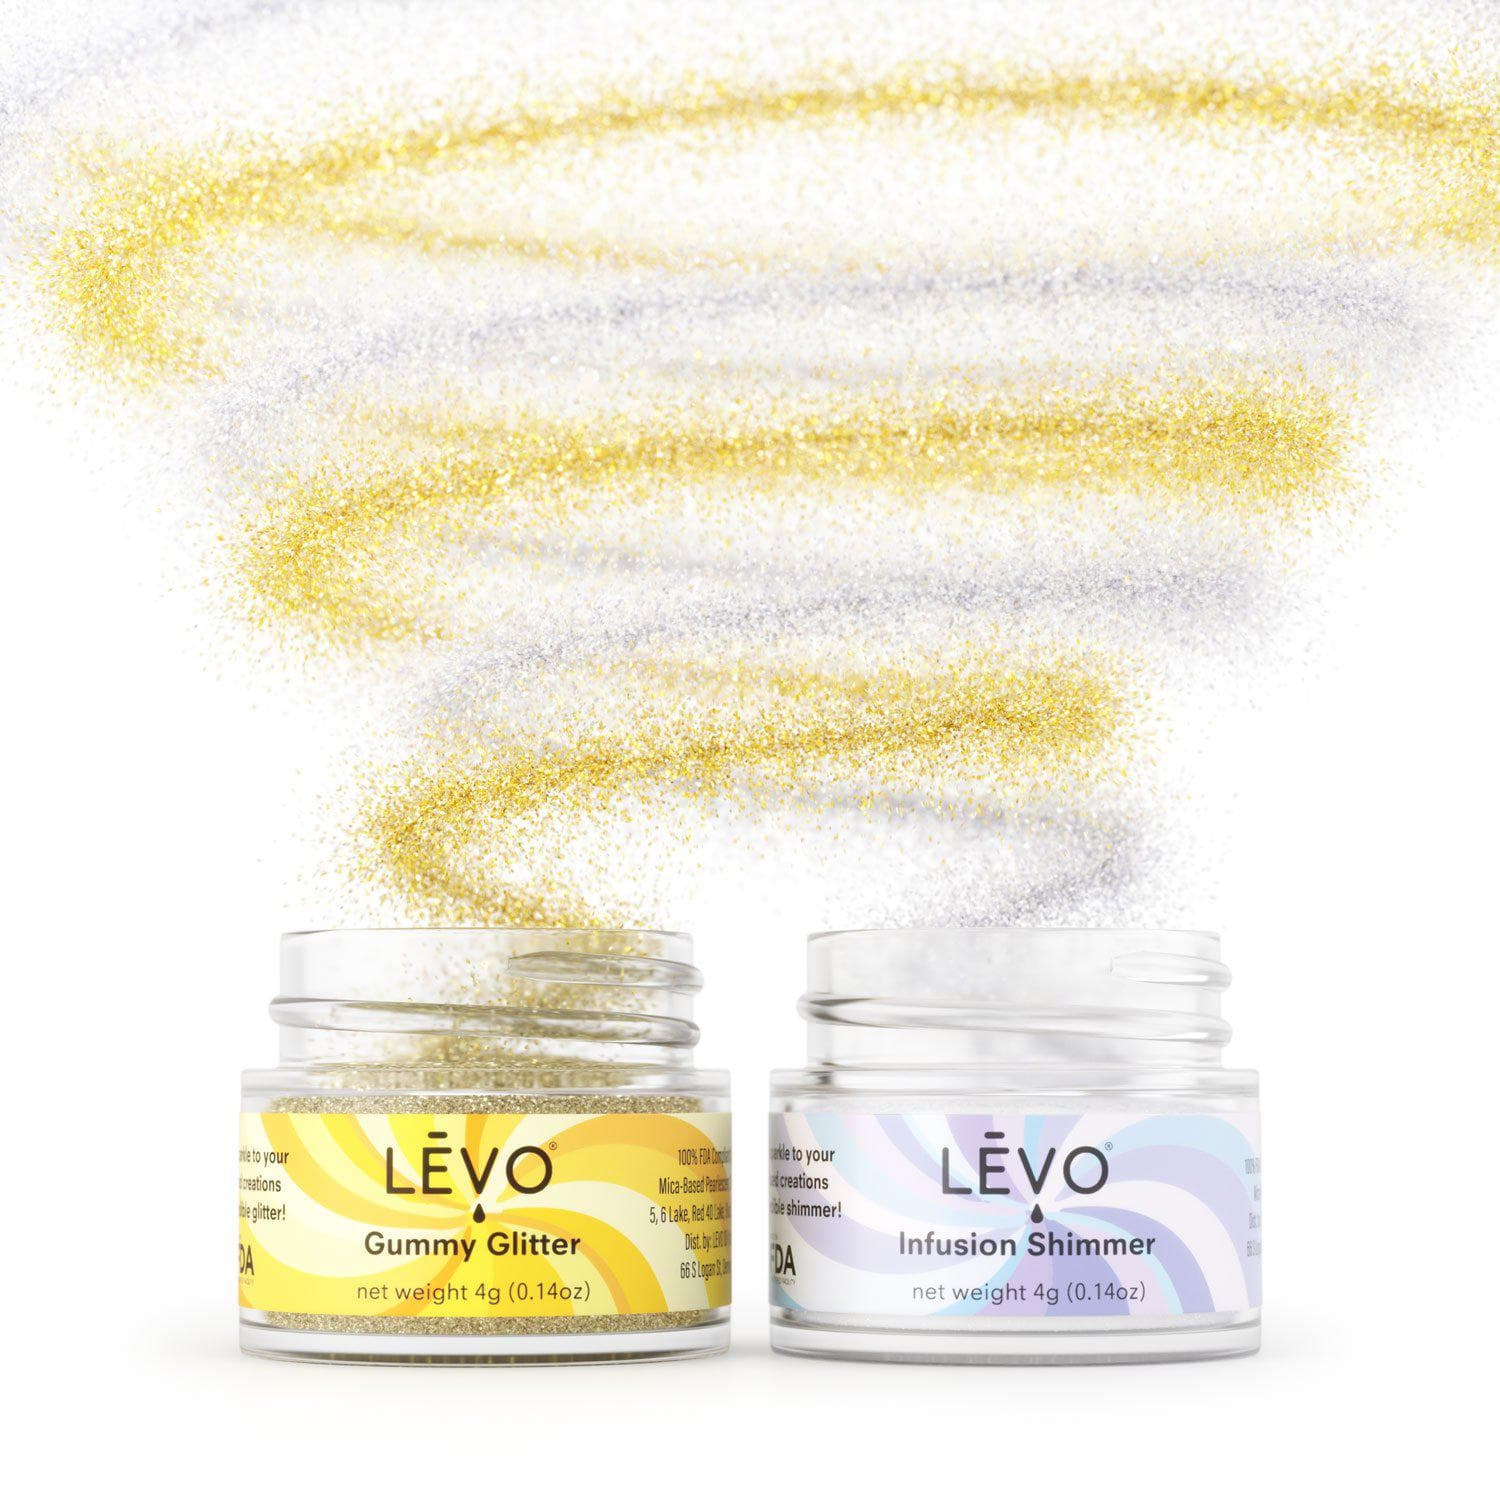 https://levooil.com/cdn/shop/products/LEVO-glitter-shimmer-edible-kit-white.jpg?v=1637628949